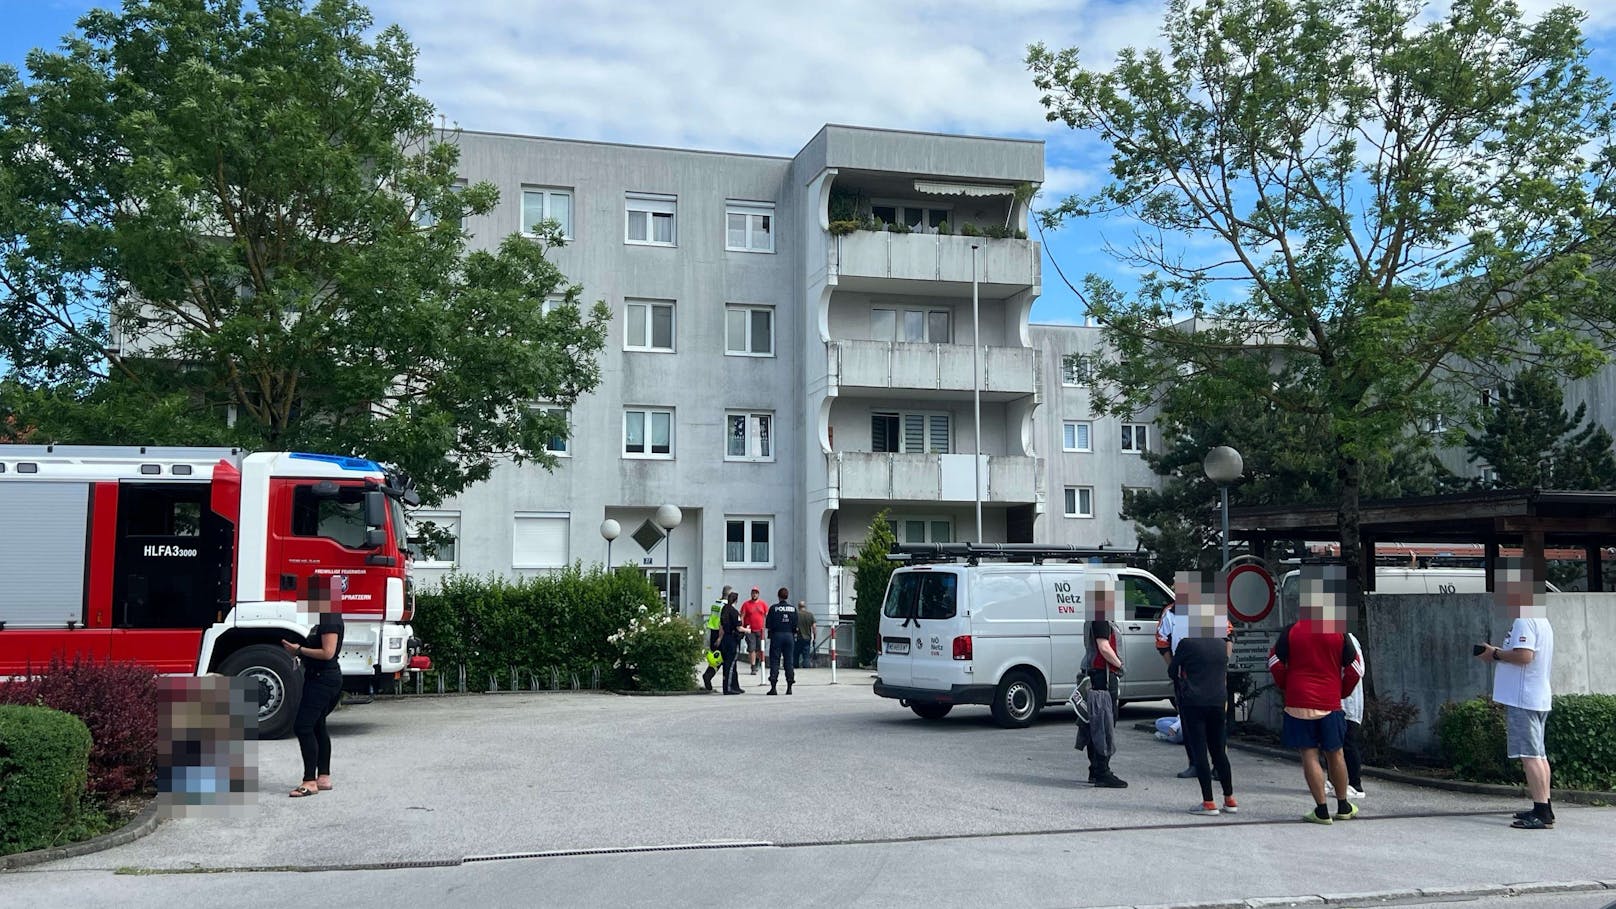 Gasgeruch in St. Pölten – Gebäude evakuiert